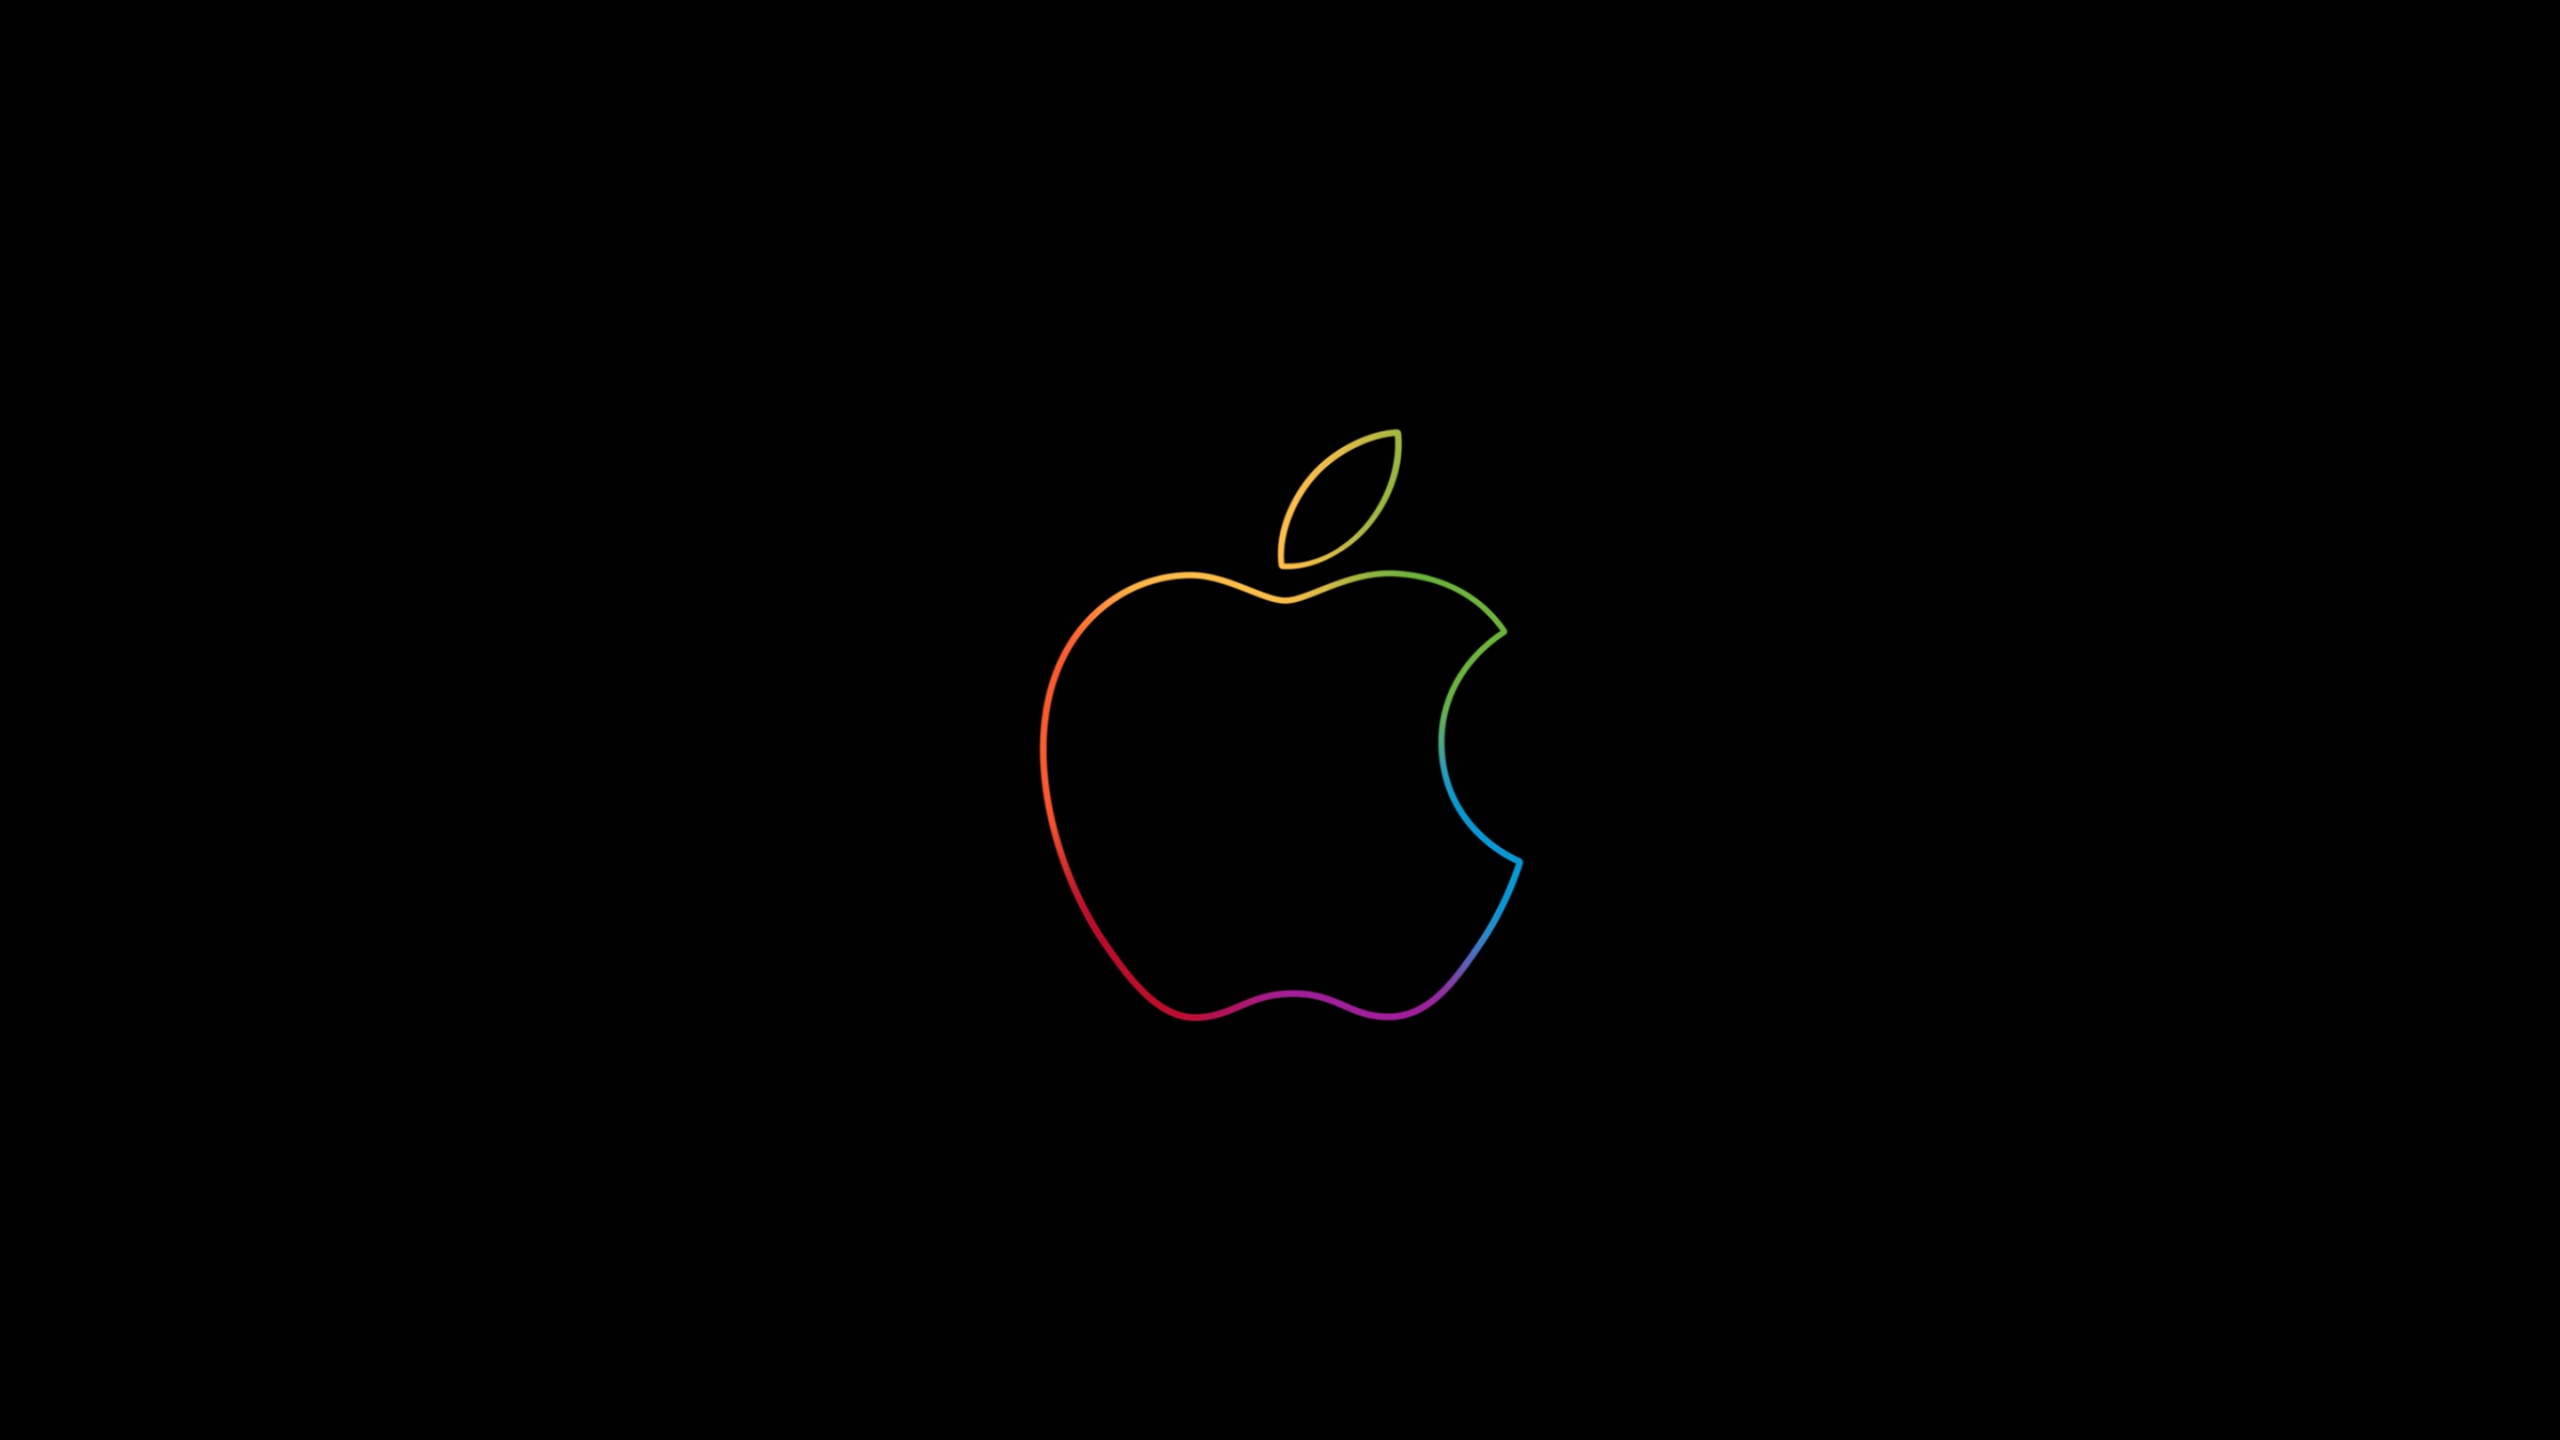 Iphone Wallpaper 4k Apple Logo : 4k Apple Logo Wallpaper / Black Apple ...